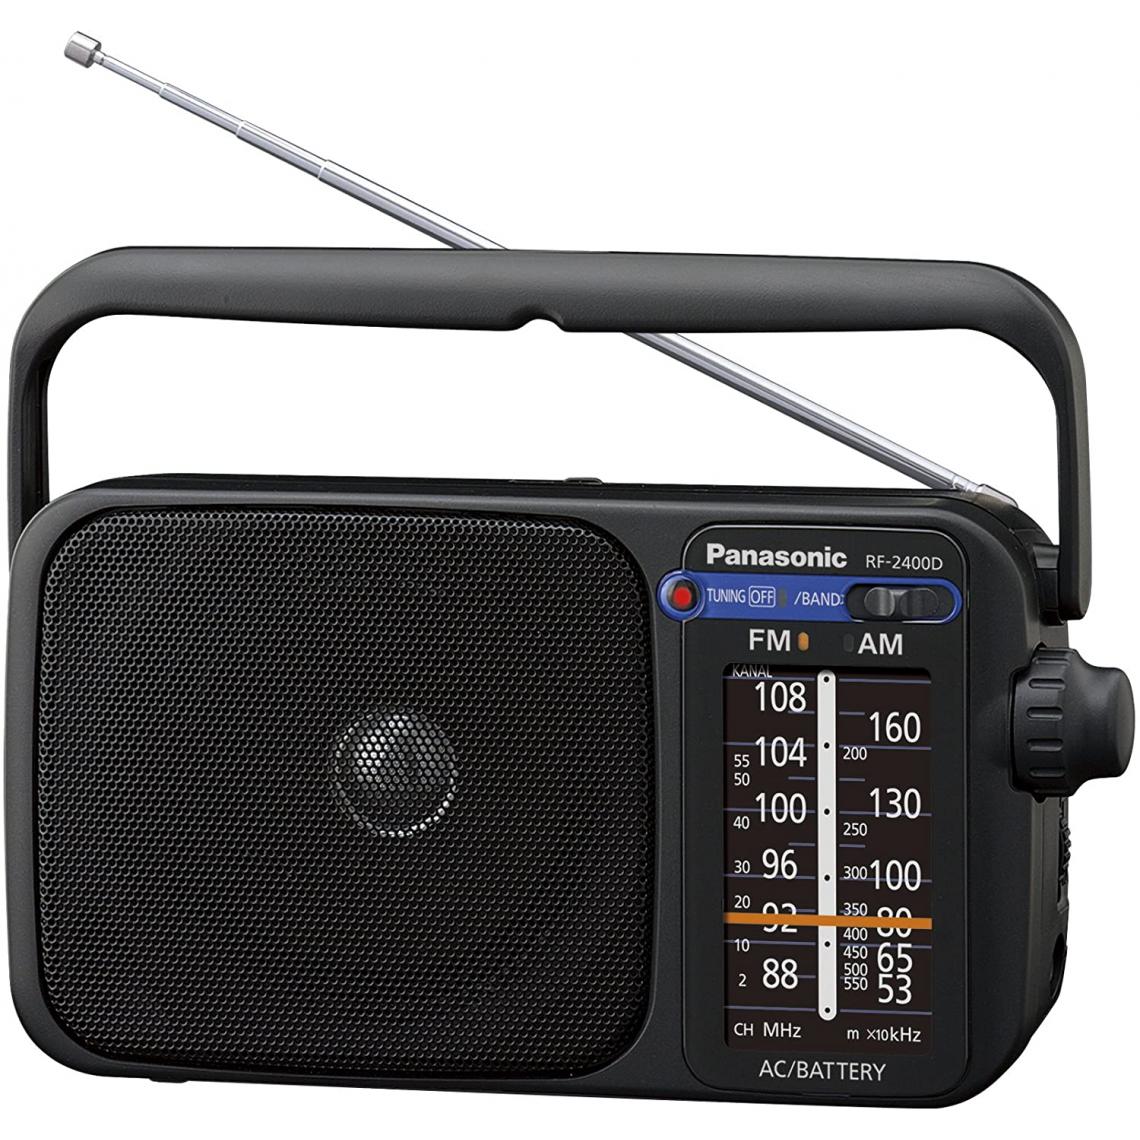 Panasonic - Rasage Electrique - radio portable FM AM sur secteur ou piles noir - Radio